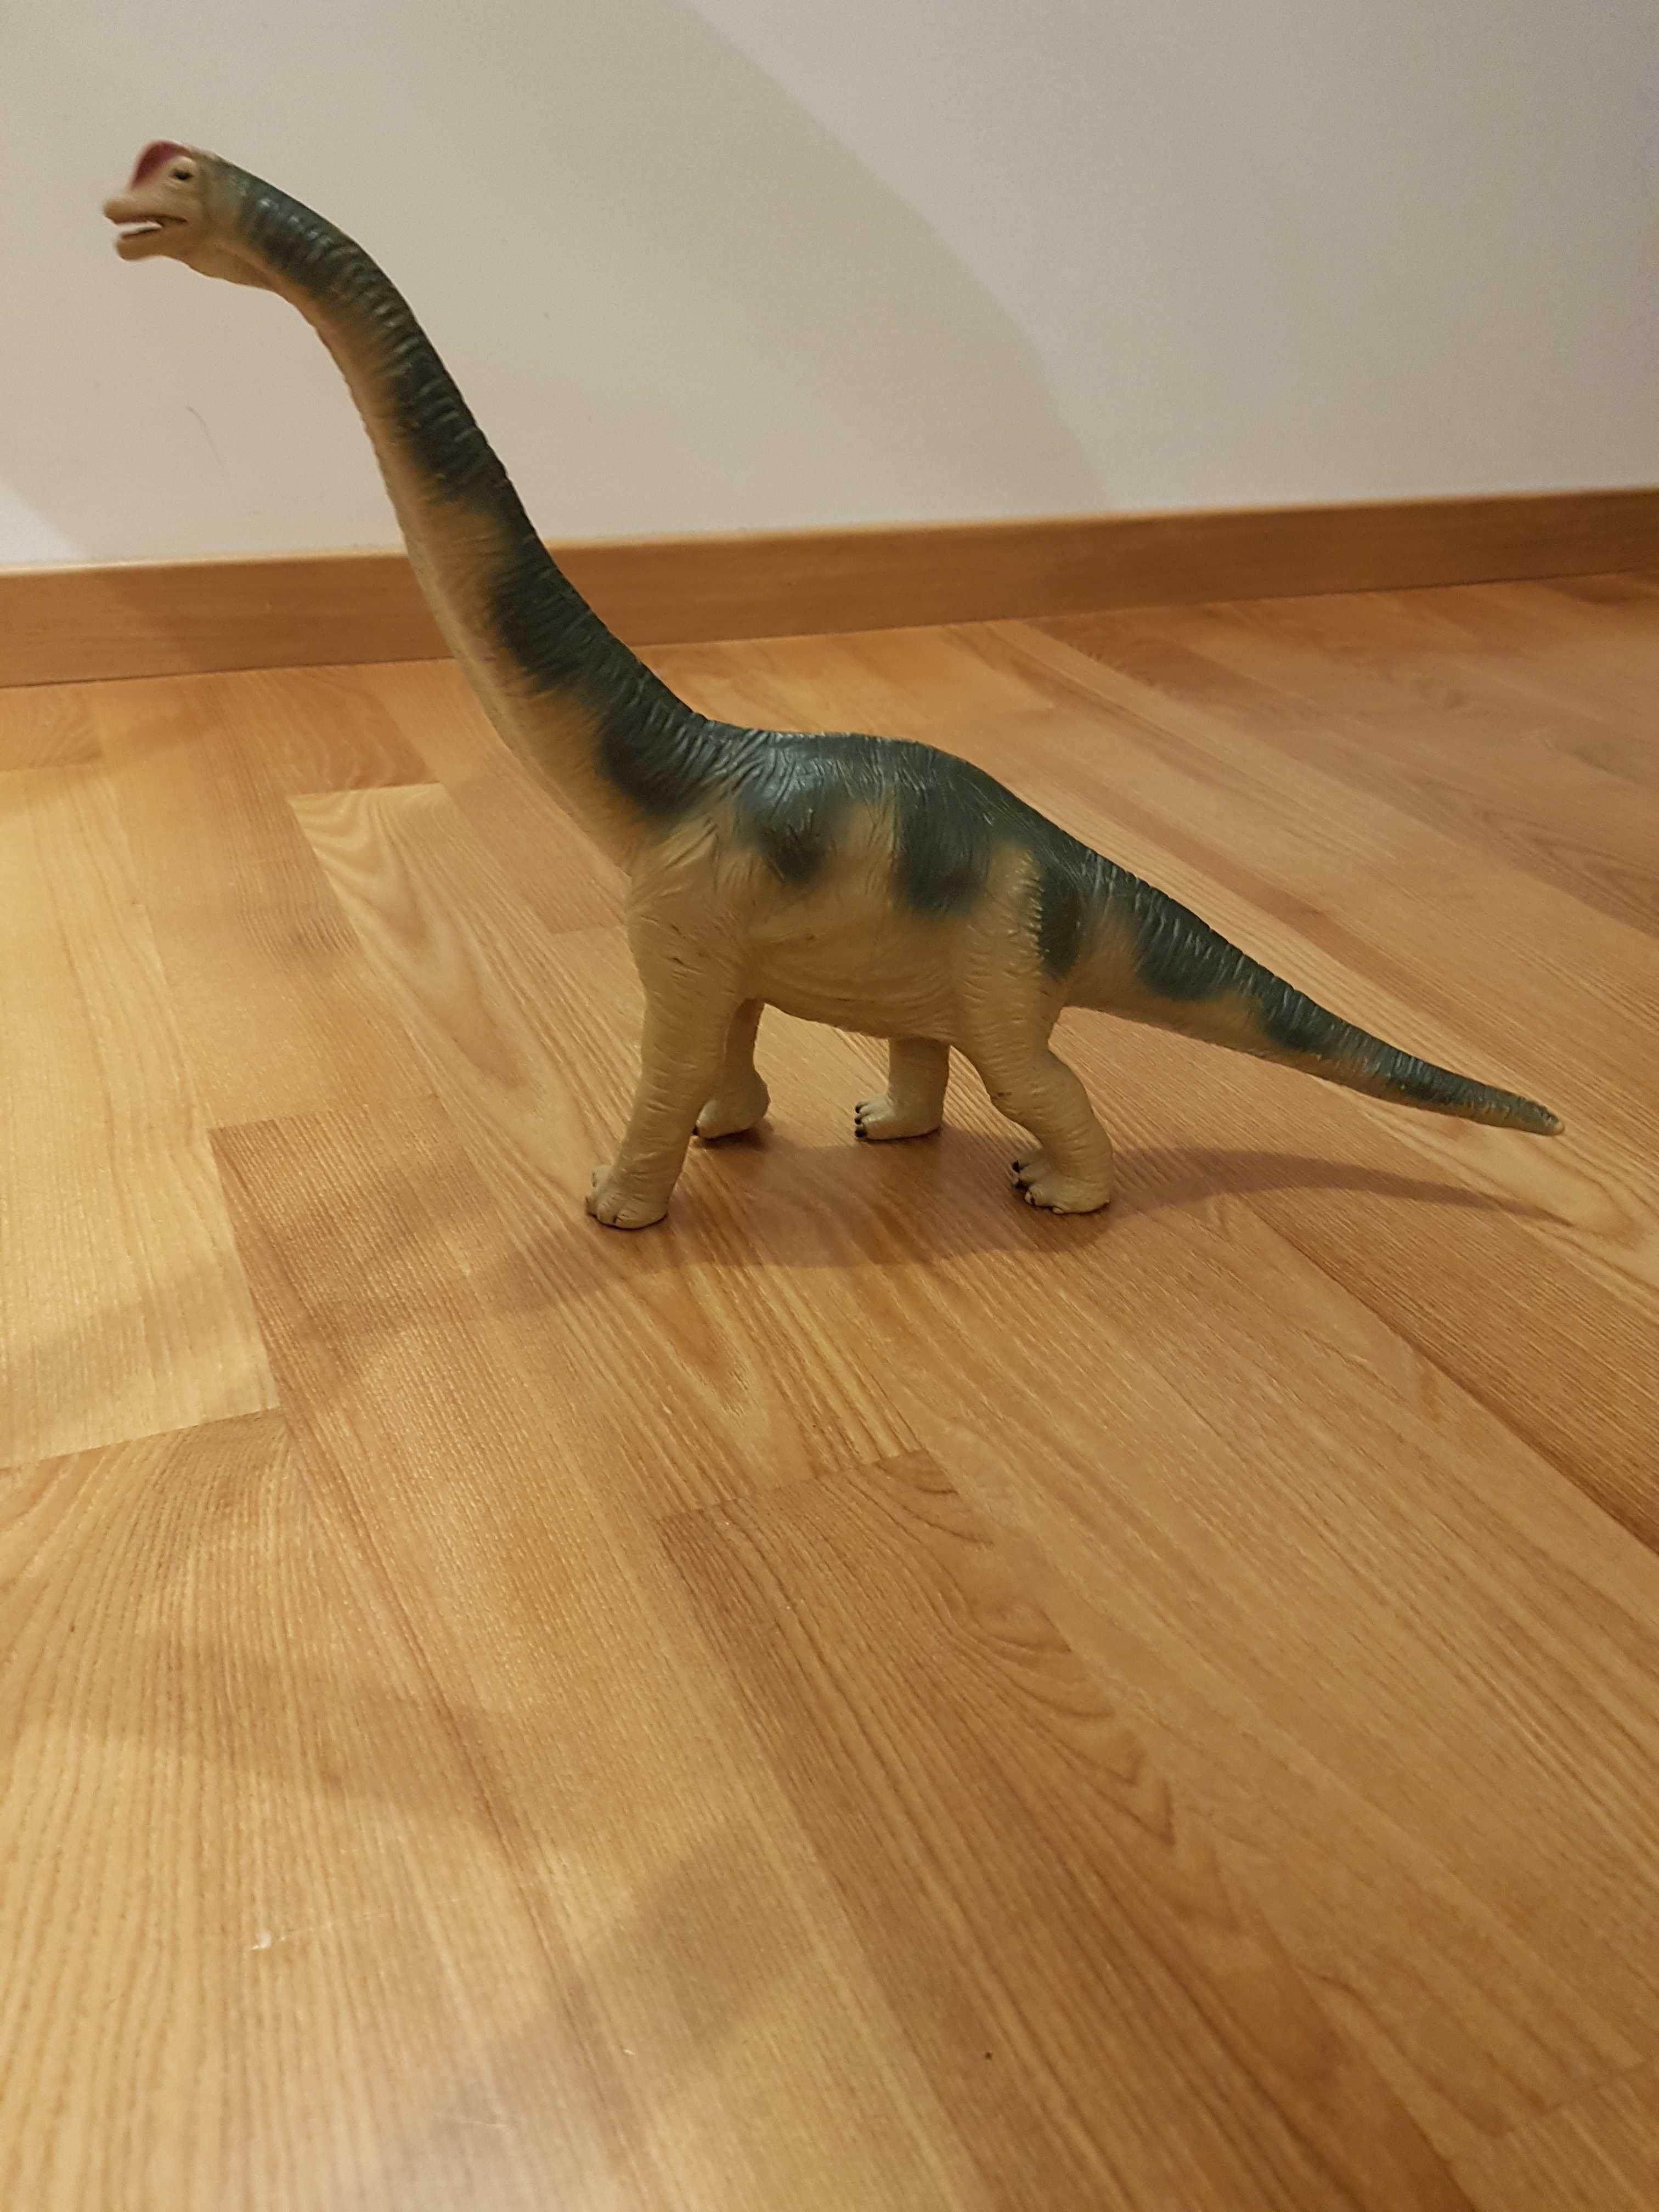 Dinozaur Brachiosaurus Diplodok figurka duża plastikowa